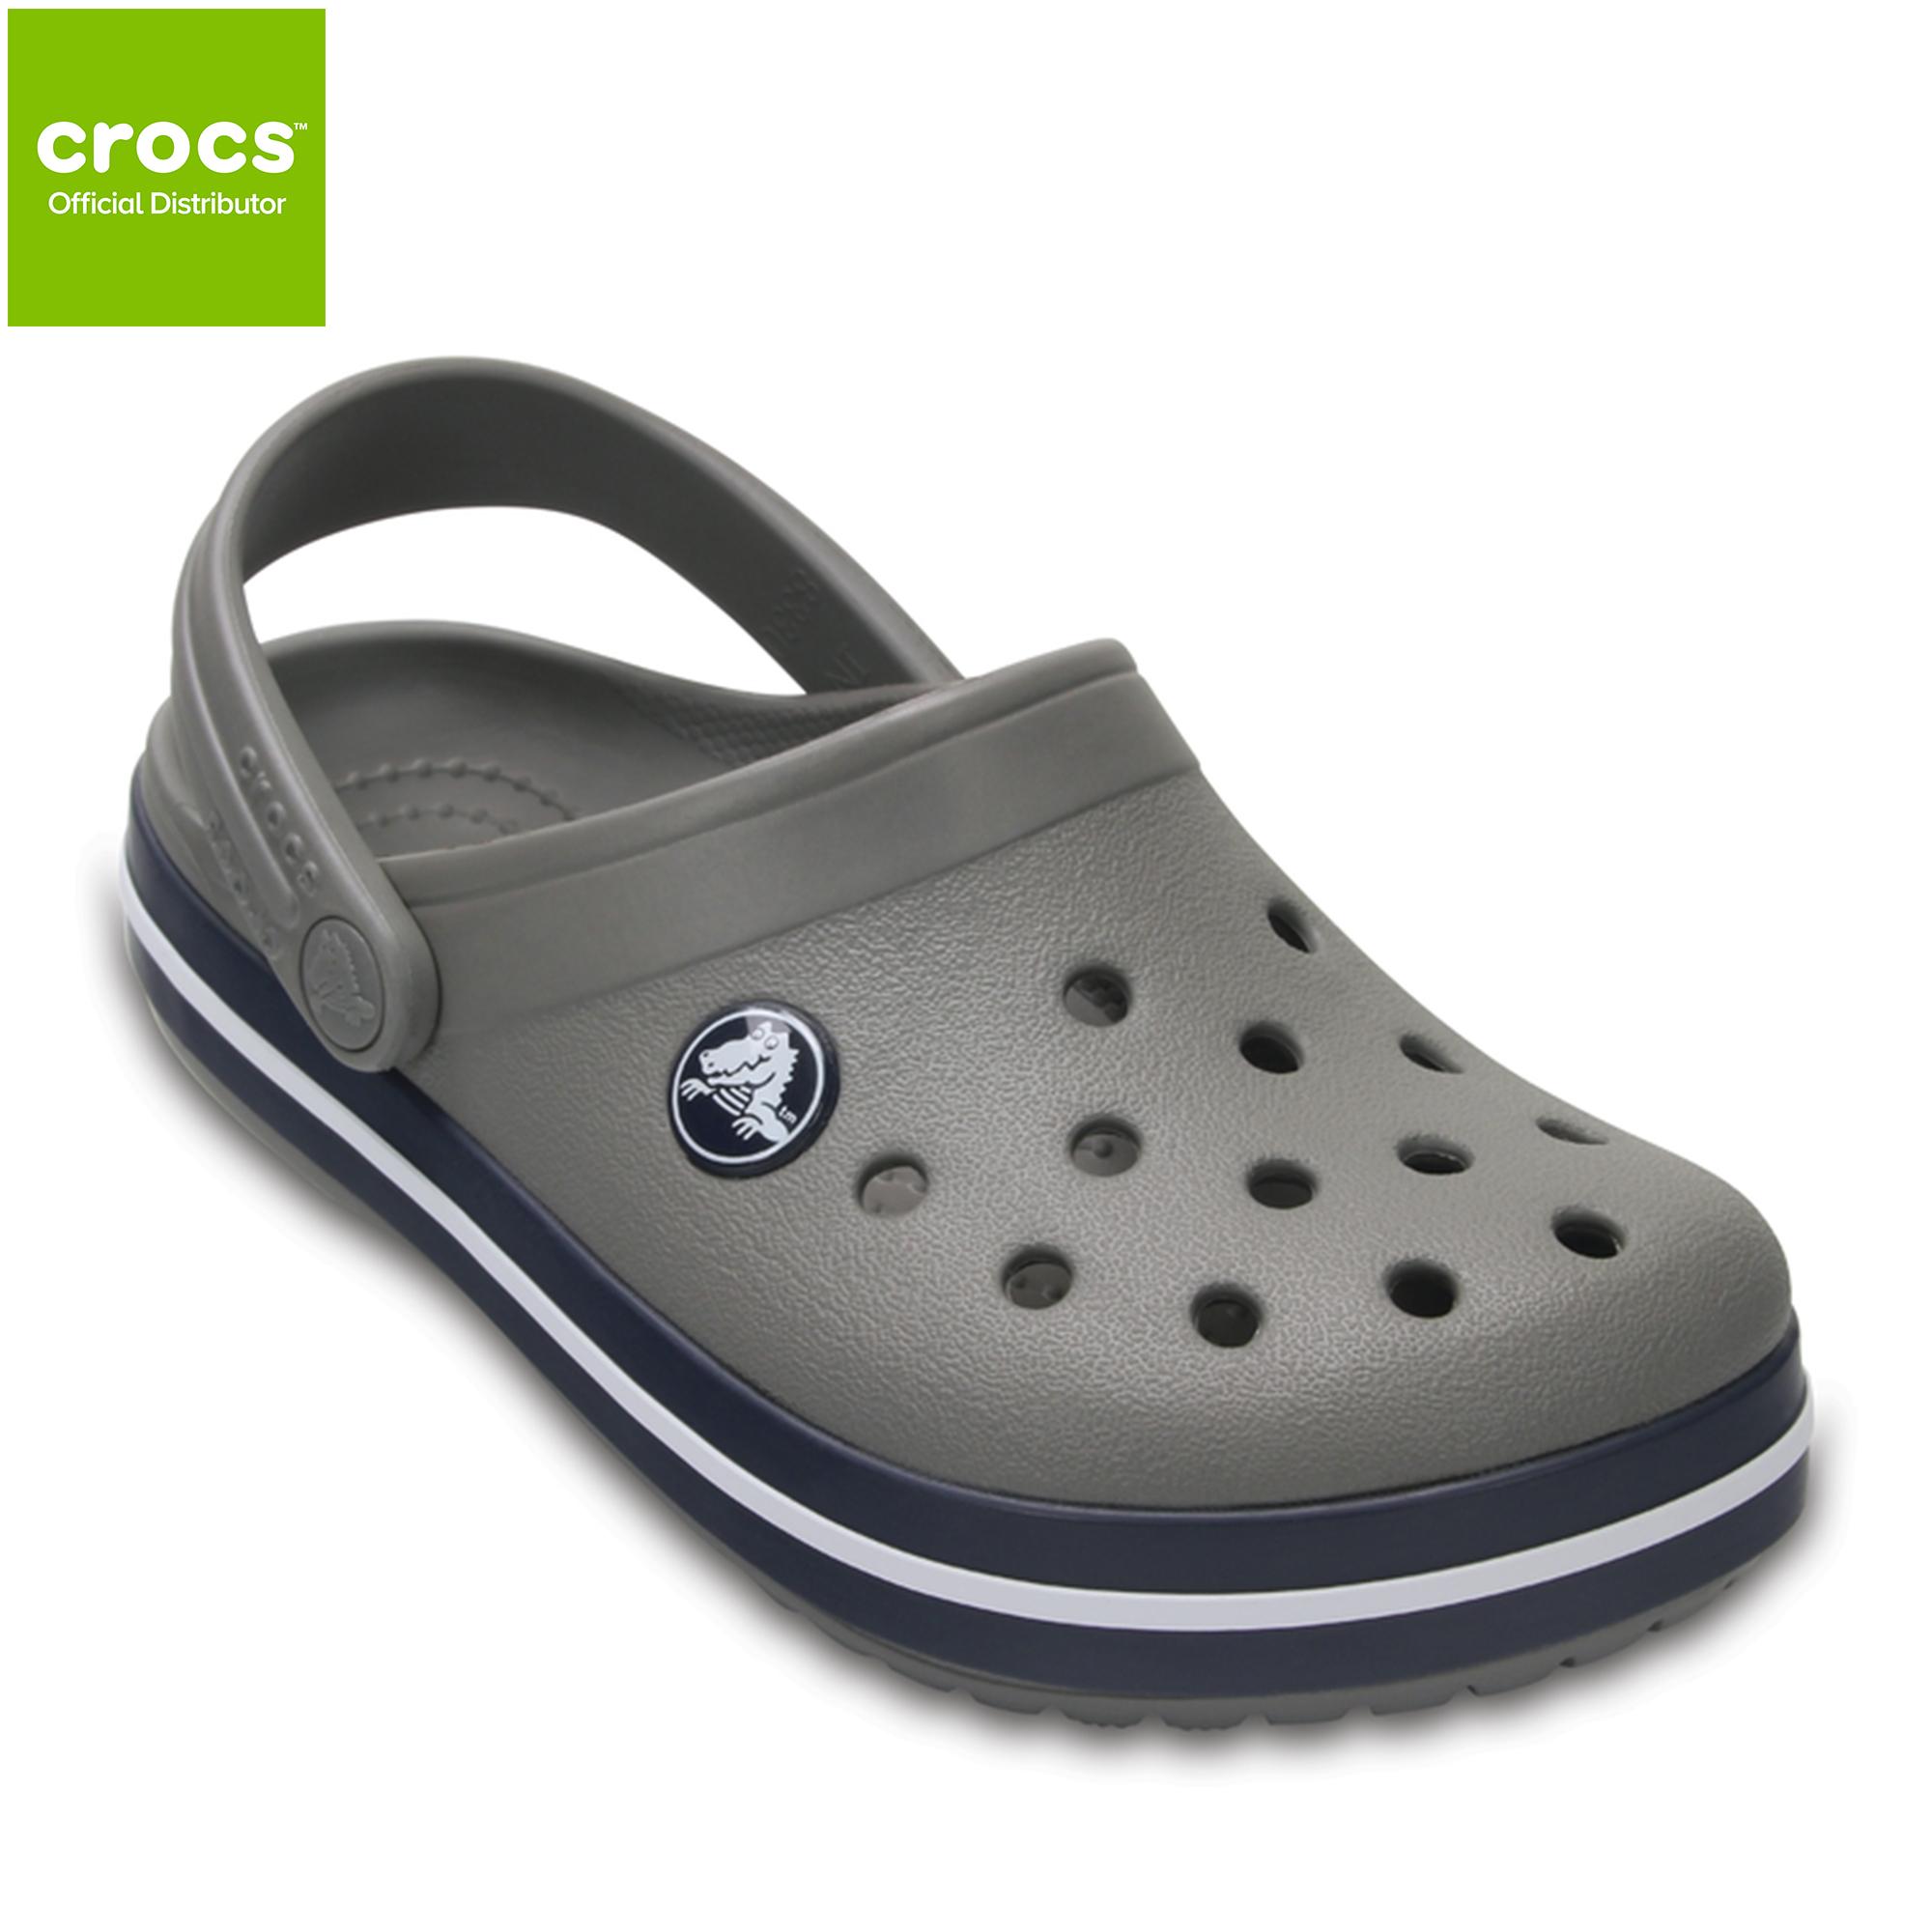 crocs new model 2018